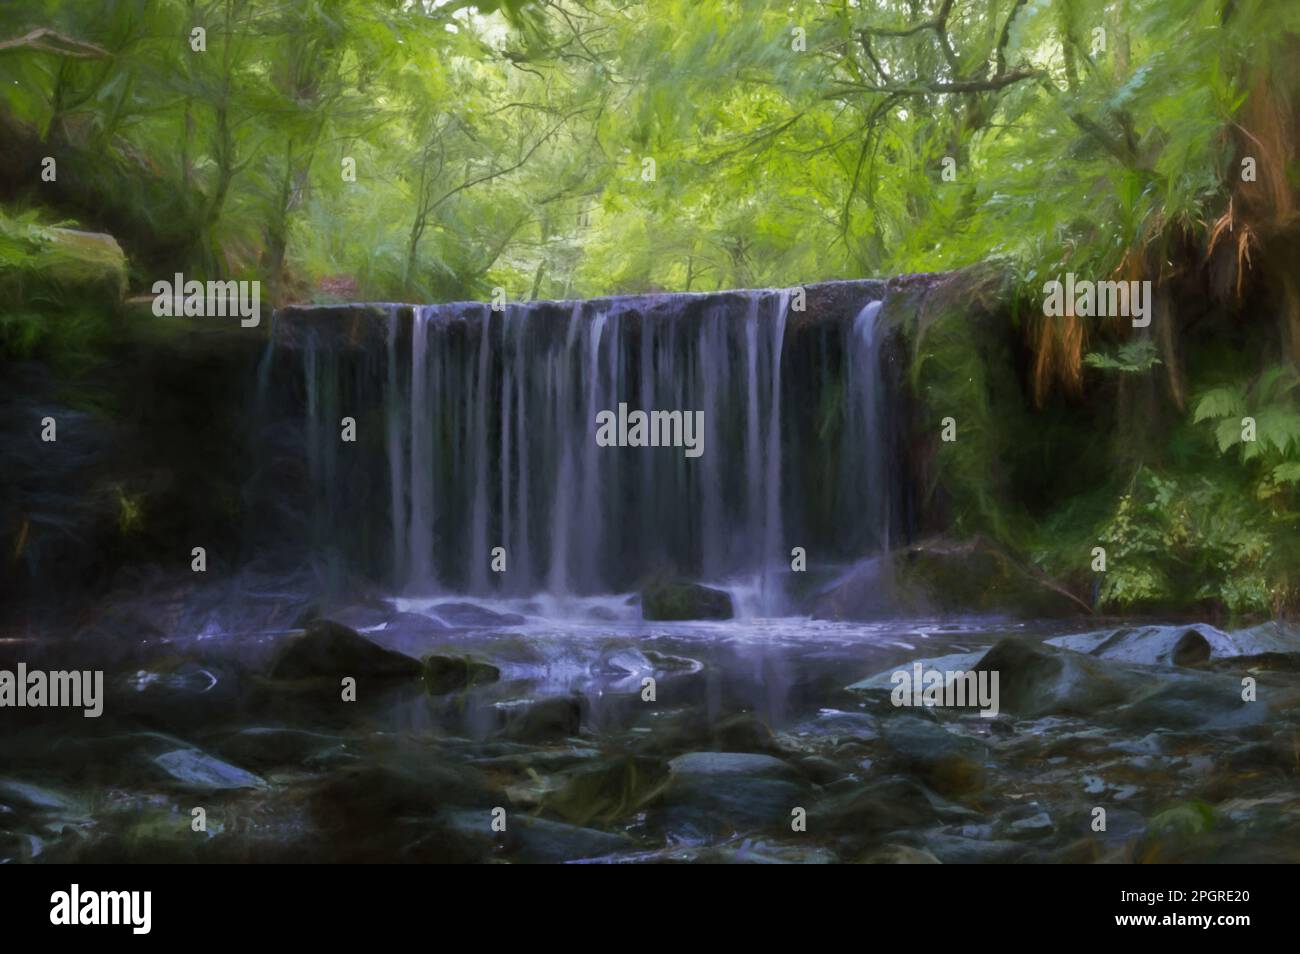 Peinture numérique d'une longue exposition d'une petite cascade au réservoir de Kynpersley dans un glen isolé. Arbres, feuilles et fougères verdoyants et éclatants Banque D'Images